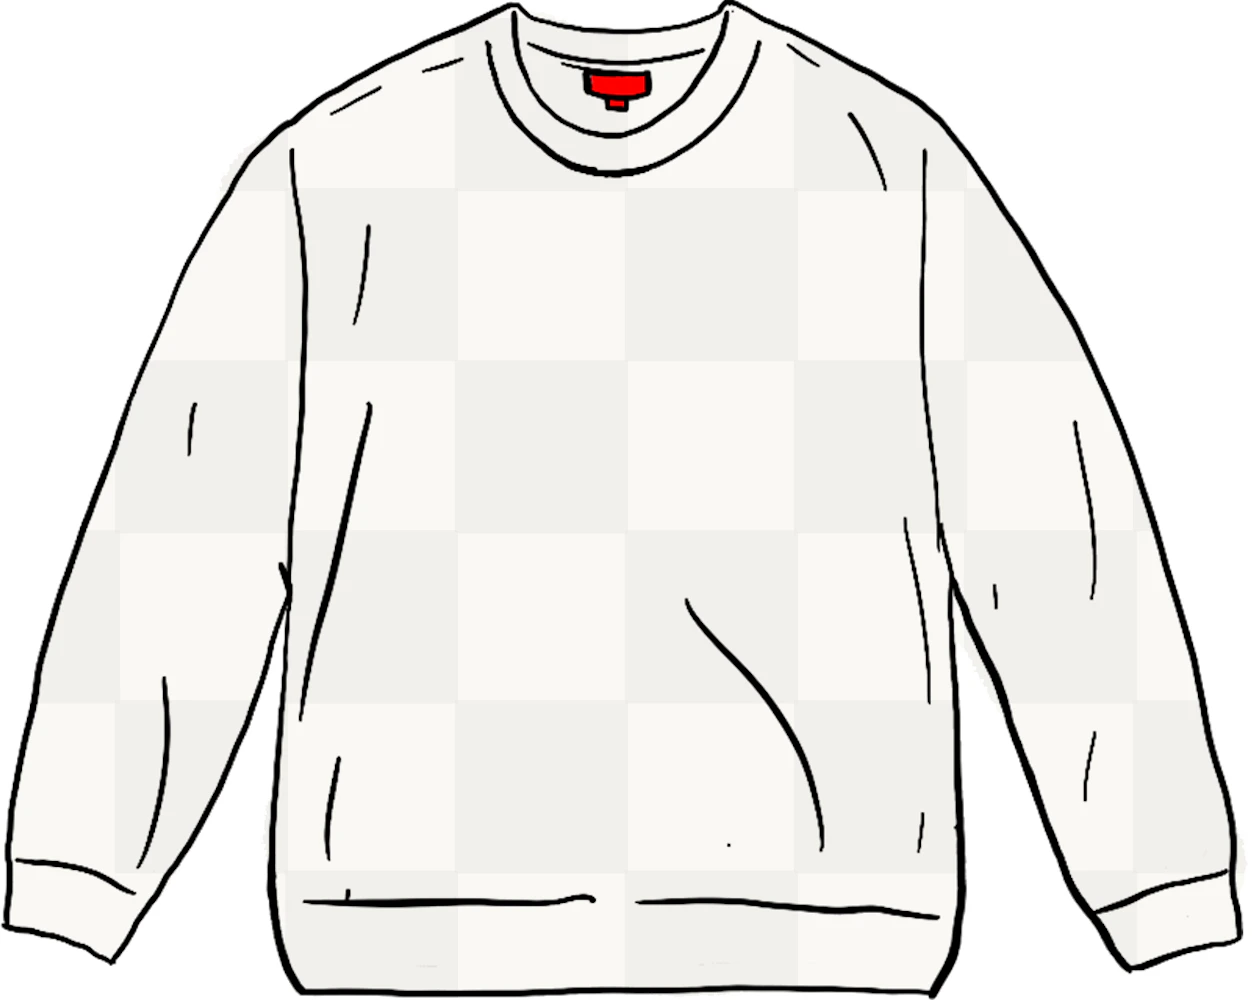 【完売品】supreme Tonal Checkerboard Sweater